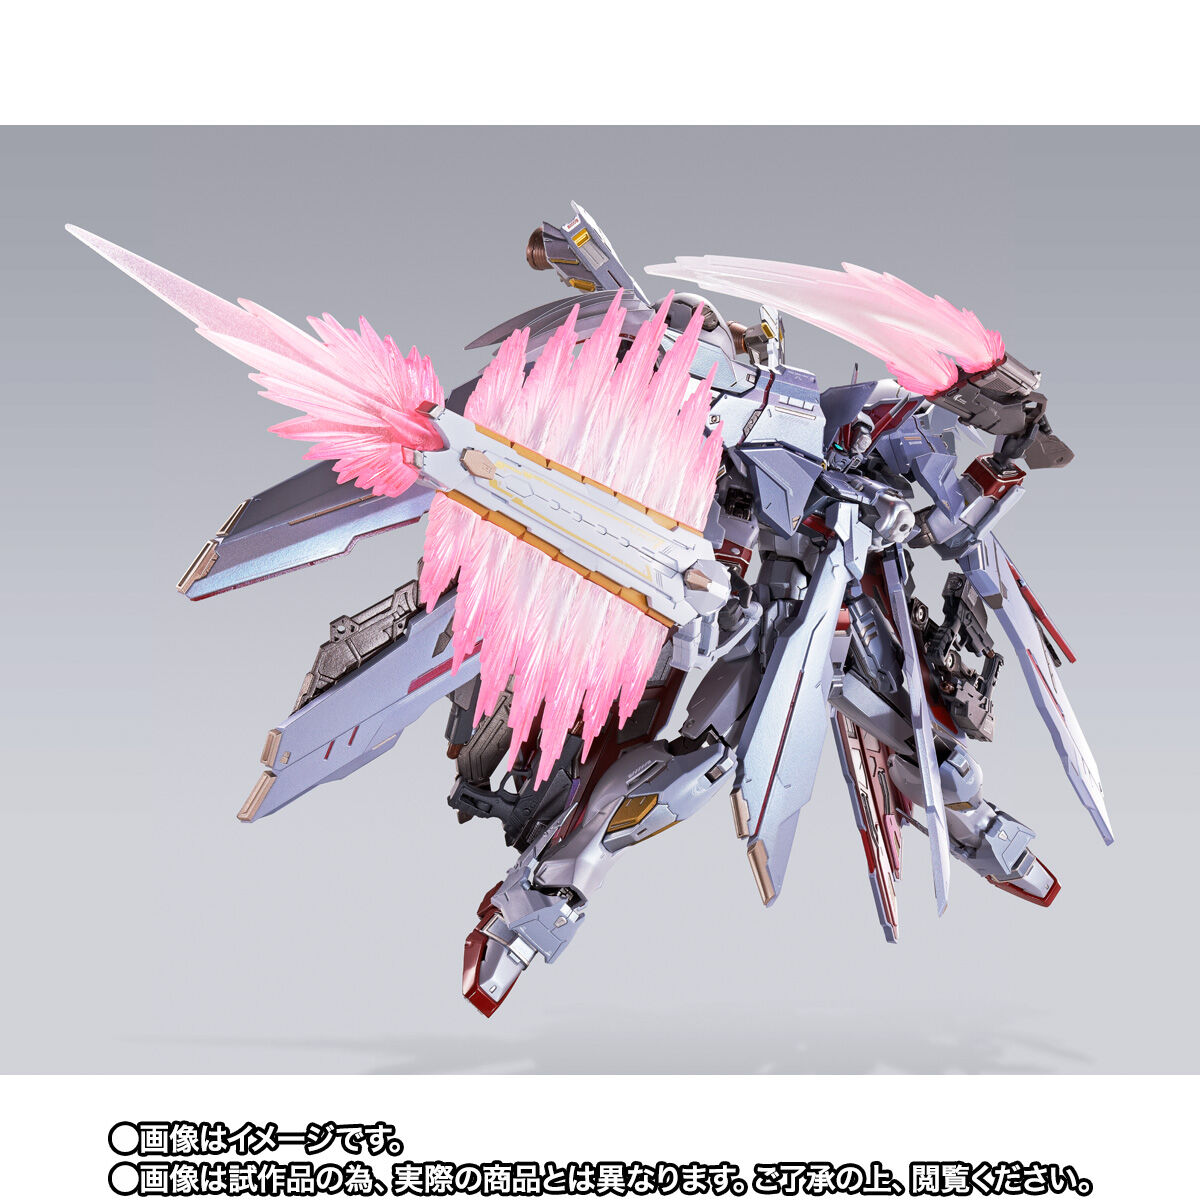 【限定販売】【2次予約】METAL BUILD『クロスボーン・ガンダムX-0 フルクロス』機動戦士クロスボーン・ガンダム 可動フィギュア-004